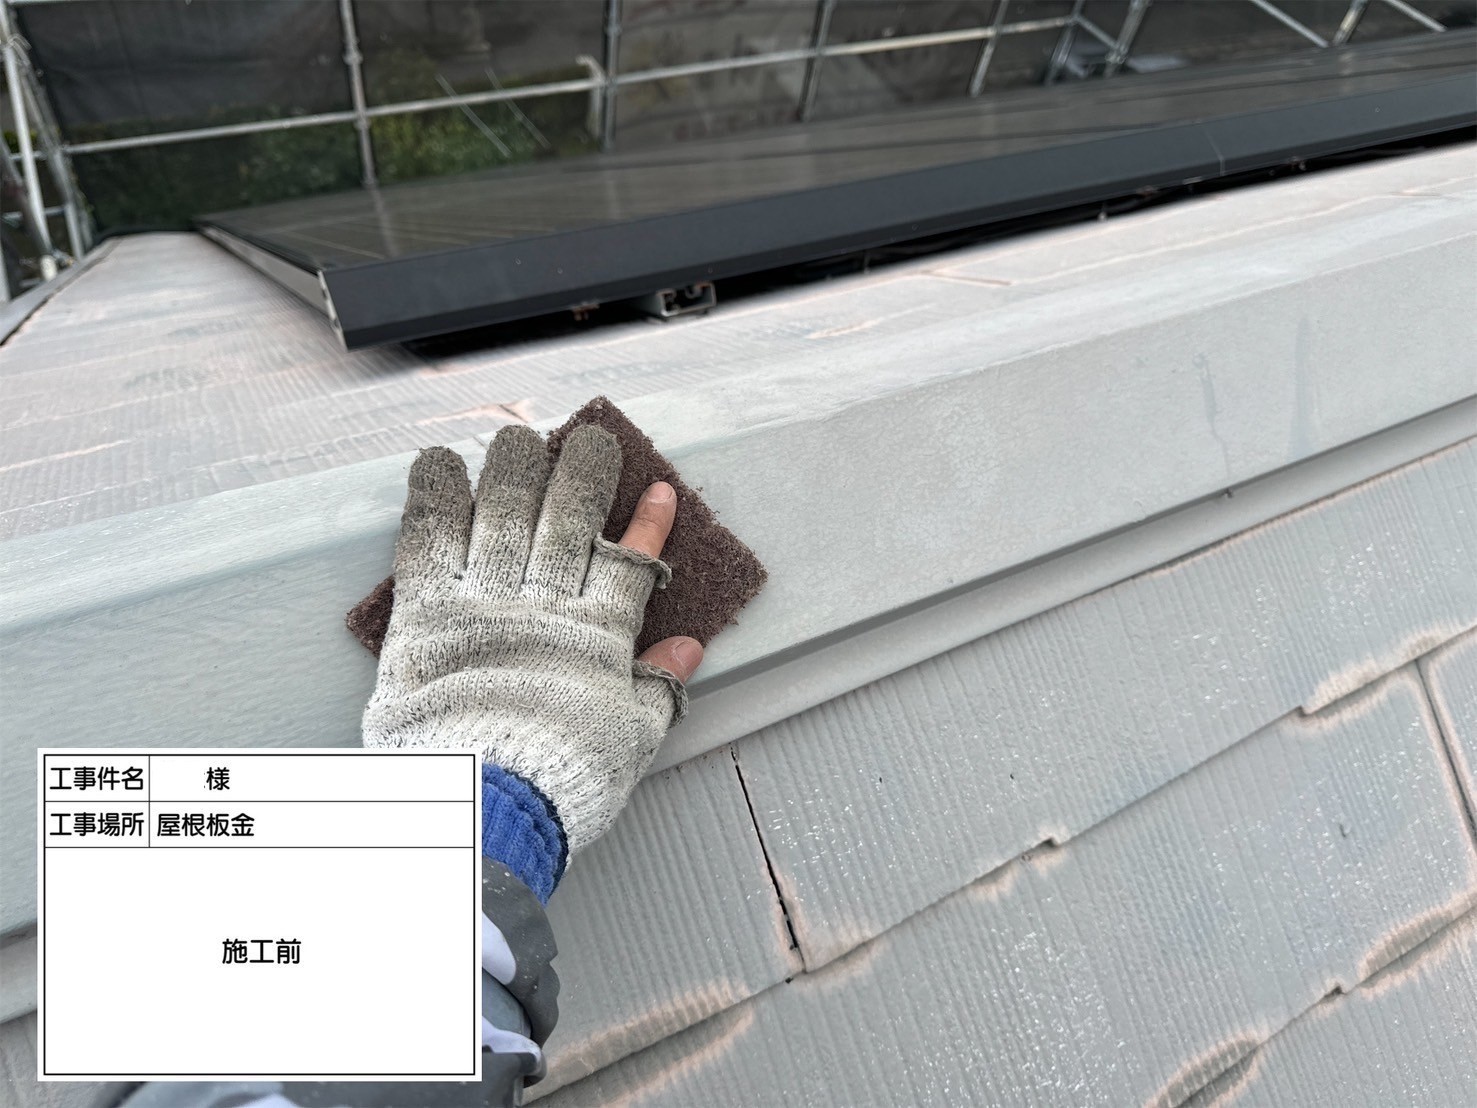 福岡県福岡市東区香椎のT様邸で外壁の補修跡が目立たないように再度補修を行い、新たに発生しているひび割れの補修も行いつつ剥がれが見られる軒天や破風板まで塗装させていただきます。屋根にも汚れやさびが付着していましたので合わせてきれいに塗装しました。4/11完成です。【HPより】